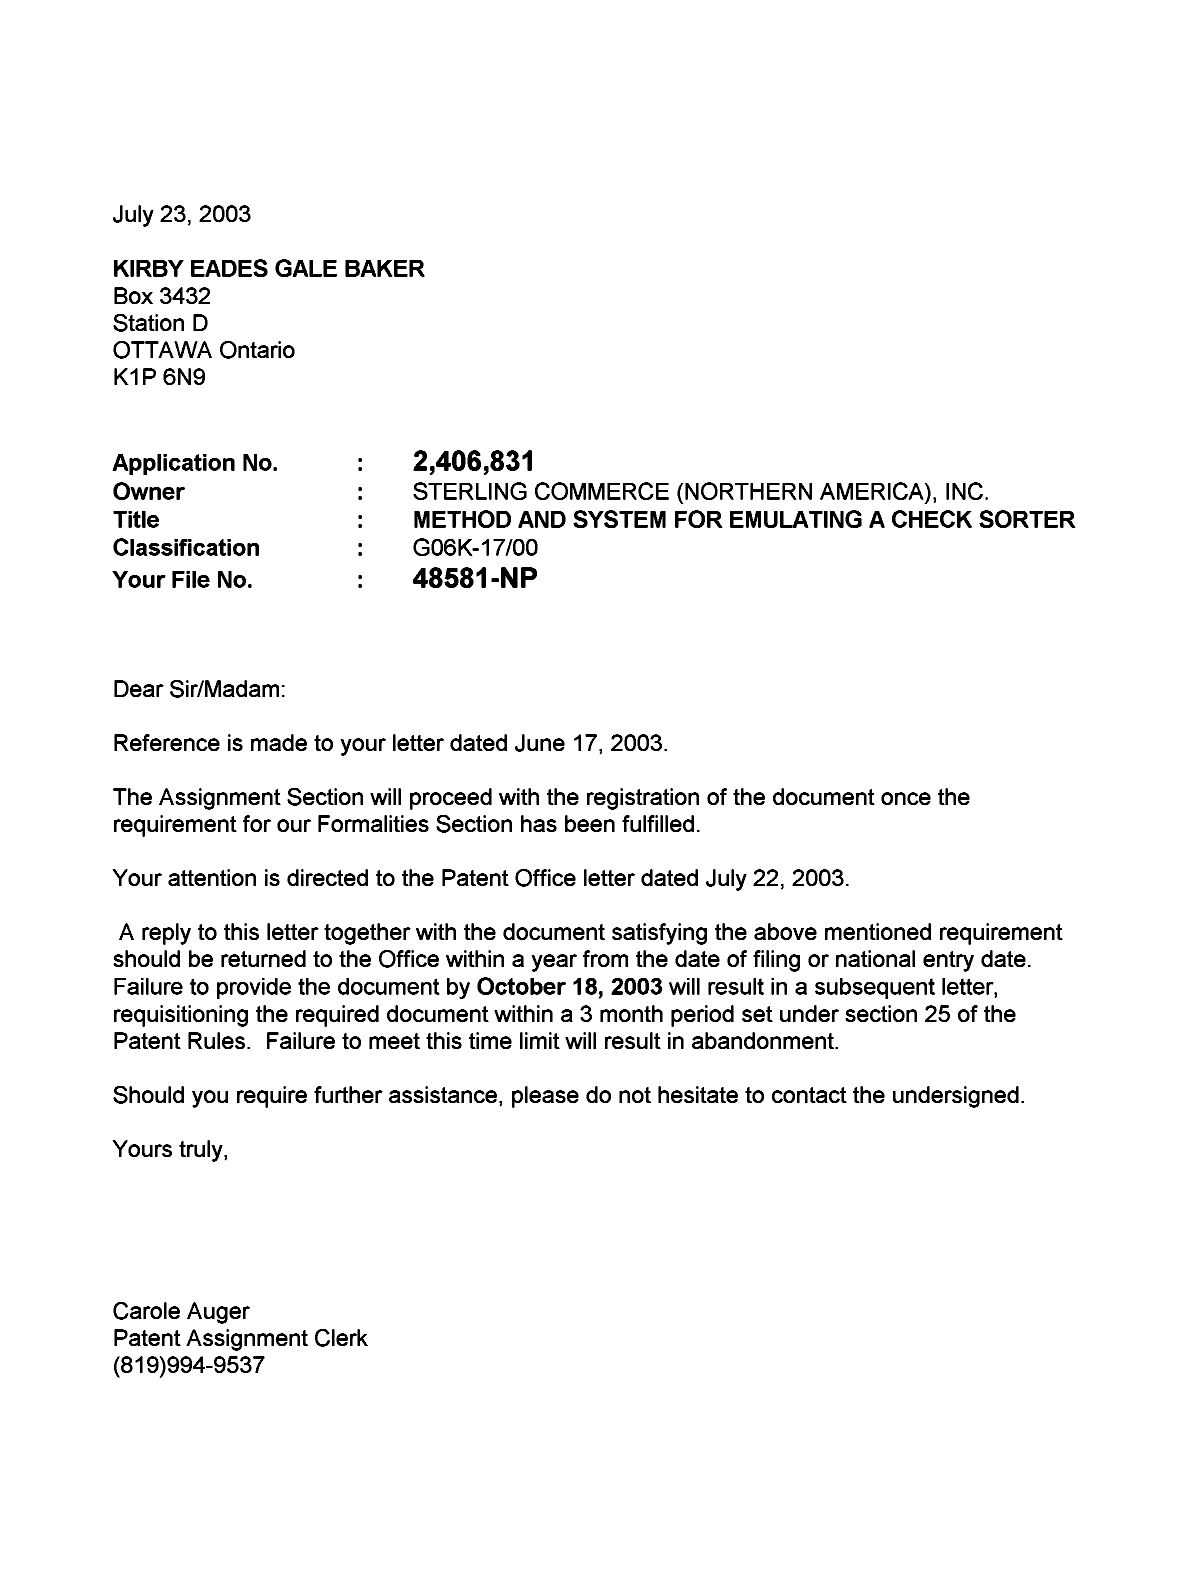 Document de brevet canadien 2406831. Correspondance 20030723. Image 1 de 1